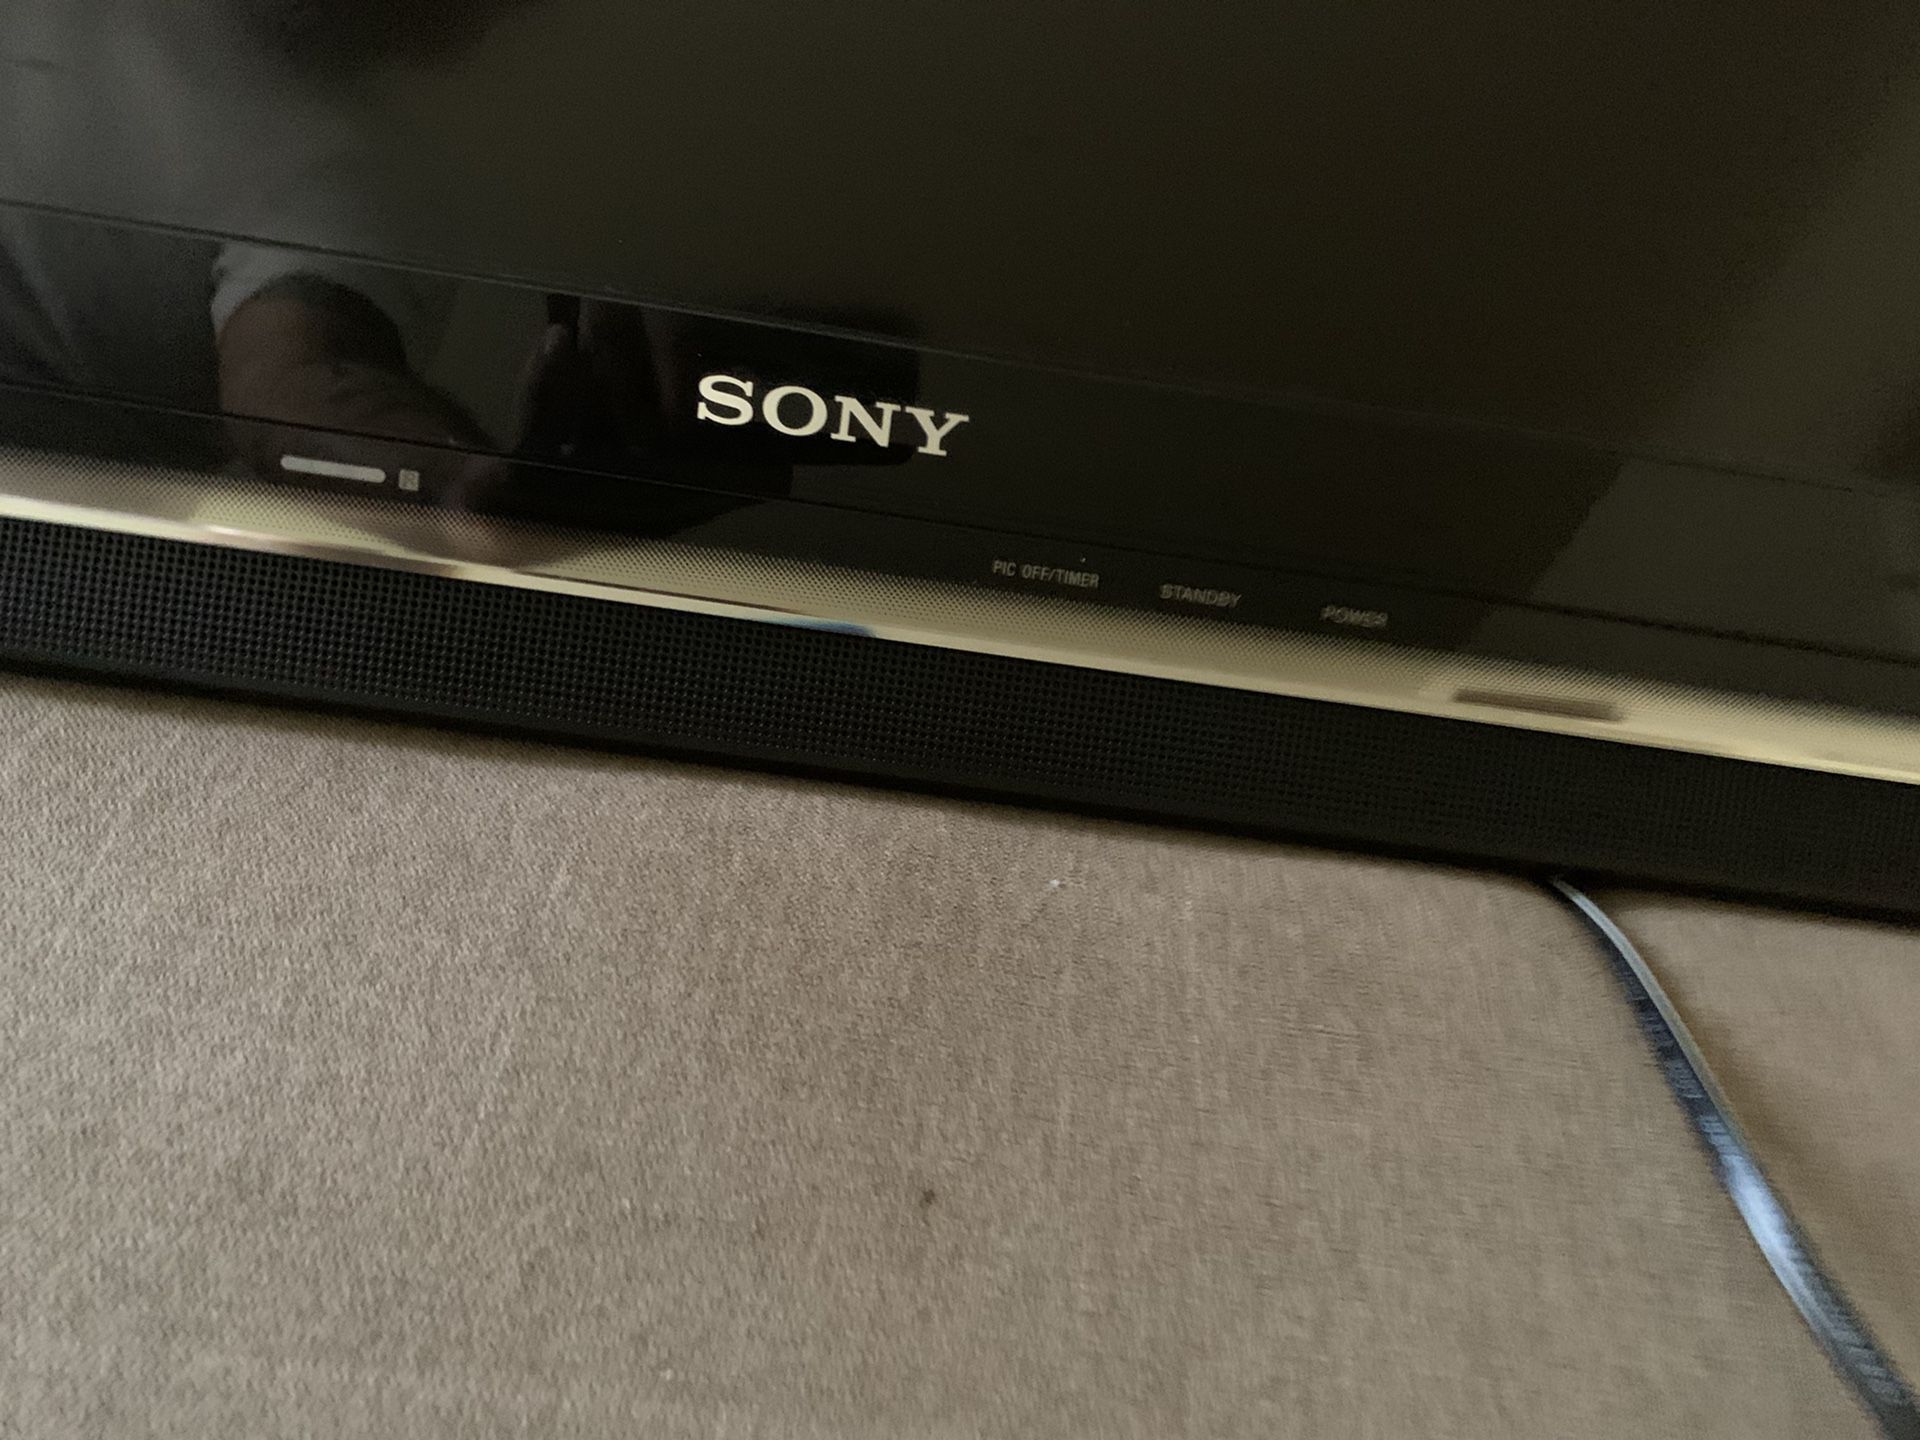 42 inch Sony TV